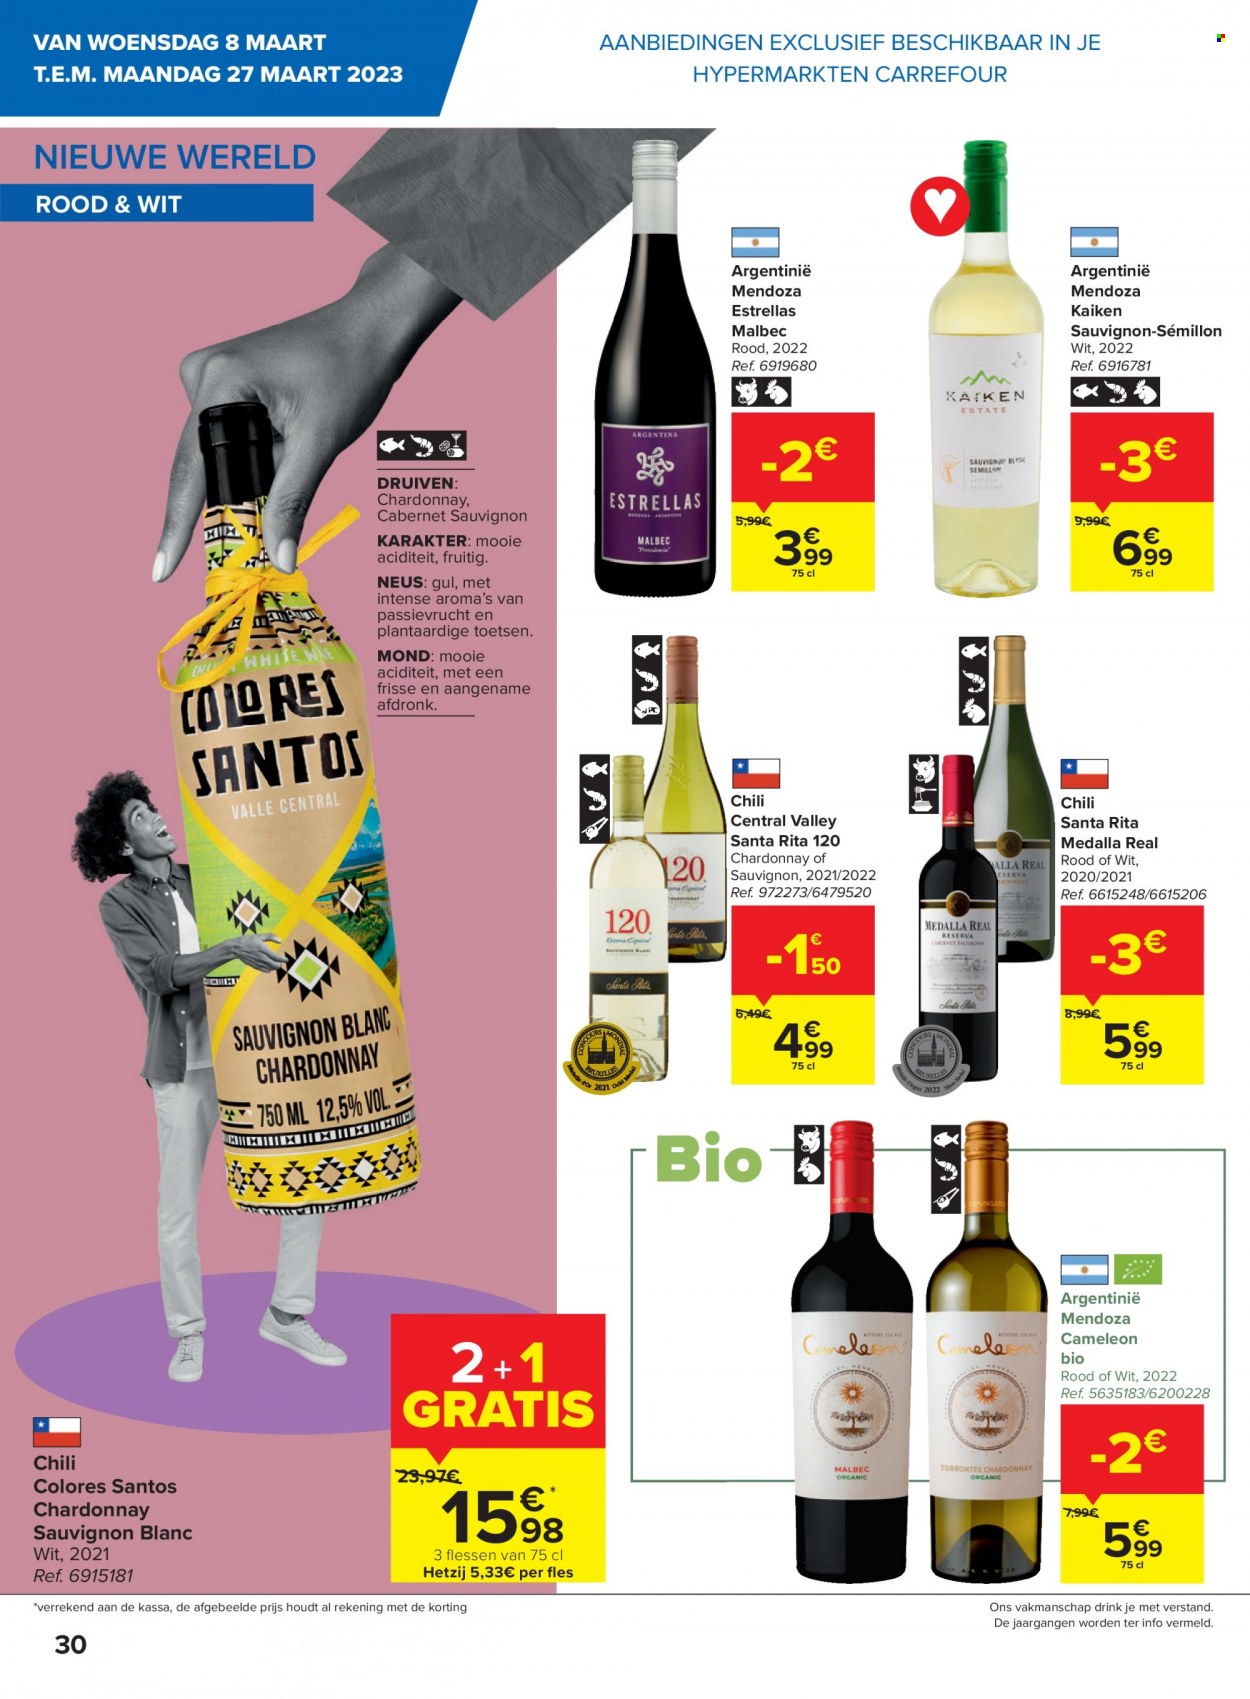 thumbnail - Catalogue Carrefour hypermarkt - 08/03/2023 - 27/03/2023 - Produits soldés - vin blanc, vin rouge, vin, alcool, Cabernet Sauvignon, Sauvignon Blanc. Page 14.